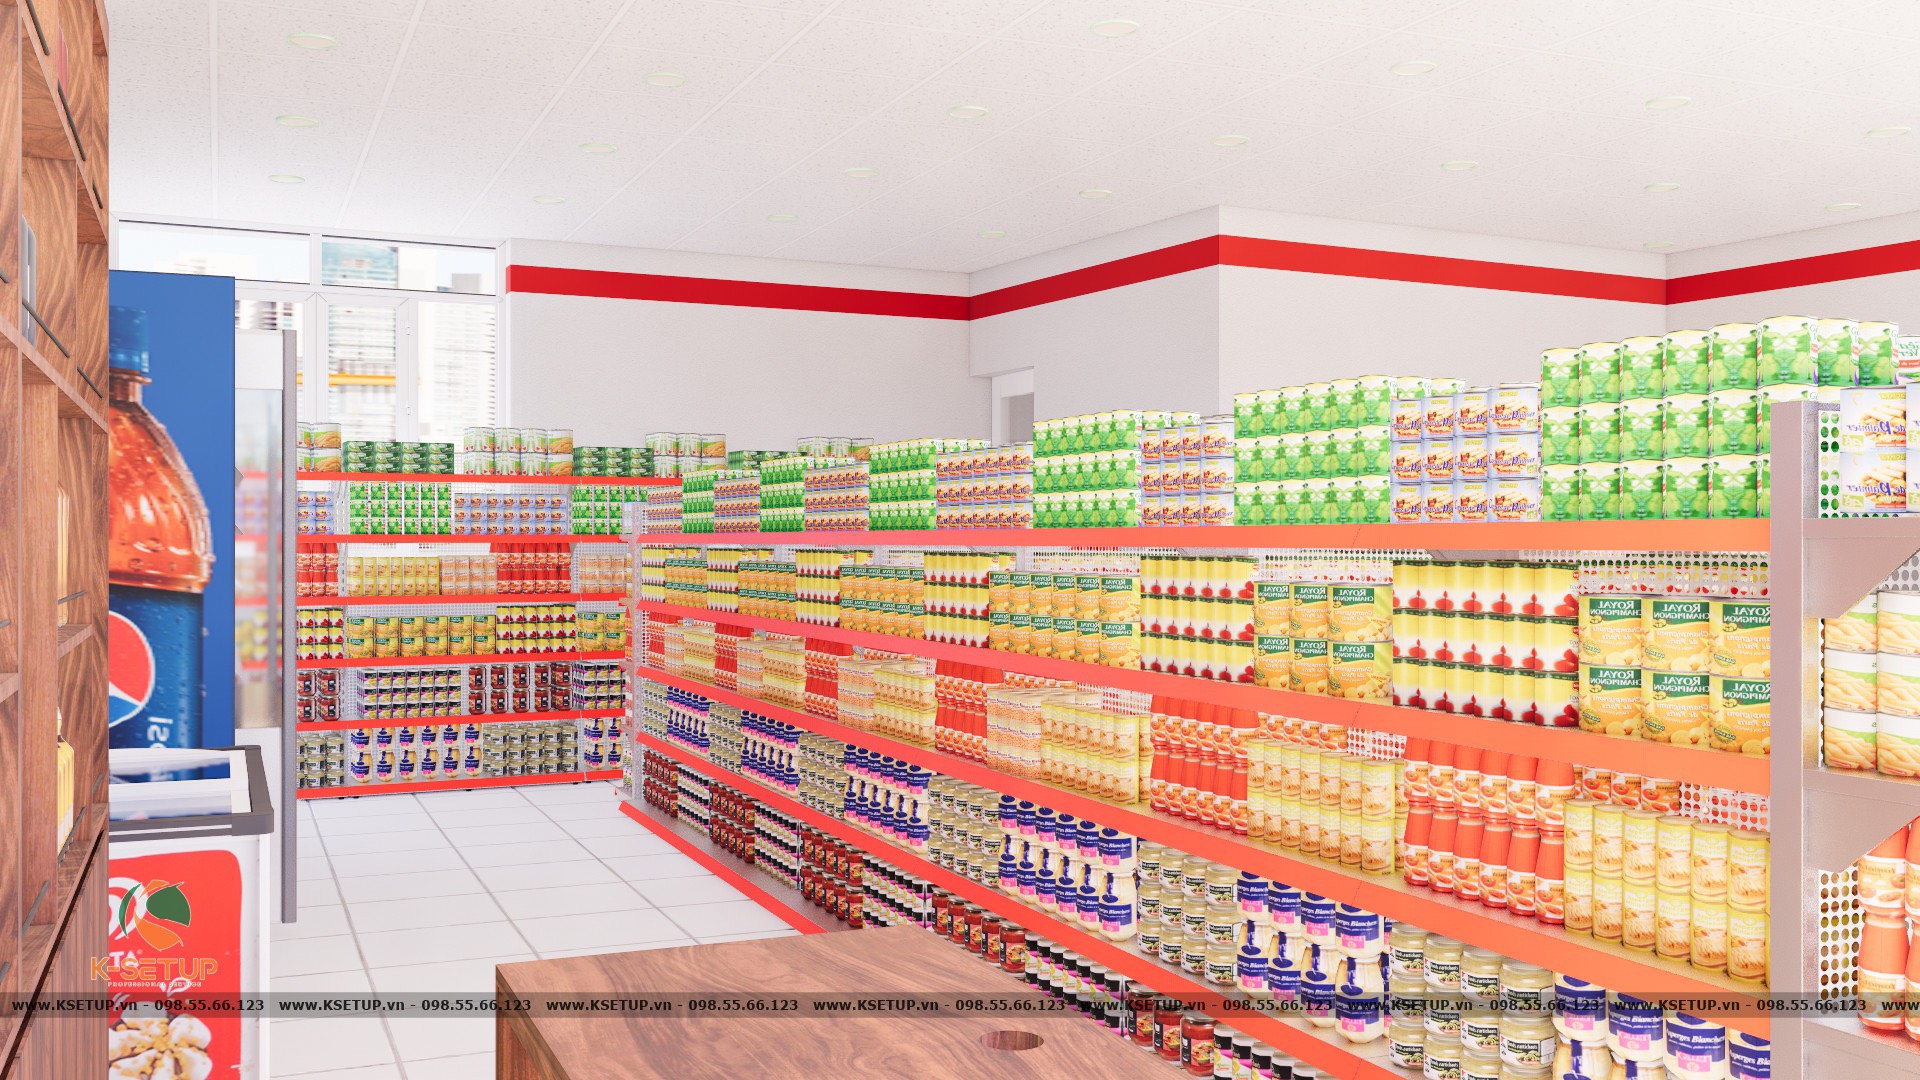 Tất cả không gian trong và ngoài siêu thị đều được thể hiện trên bản thiết kế